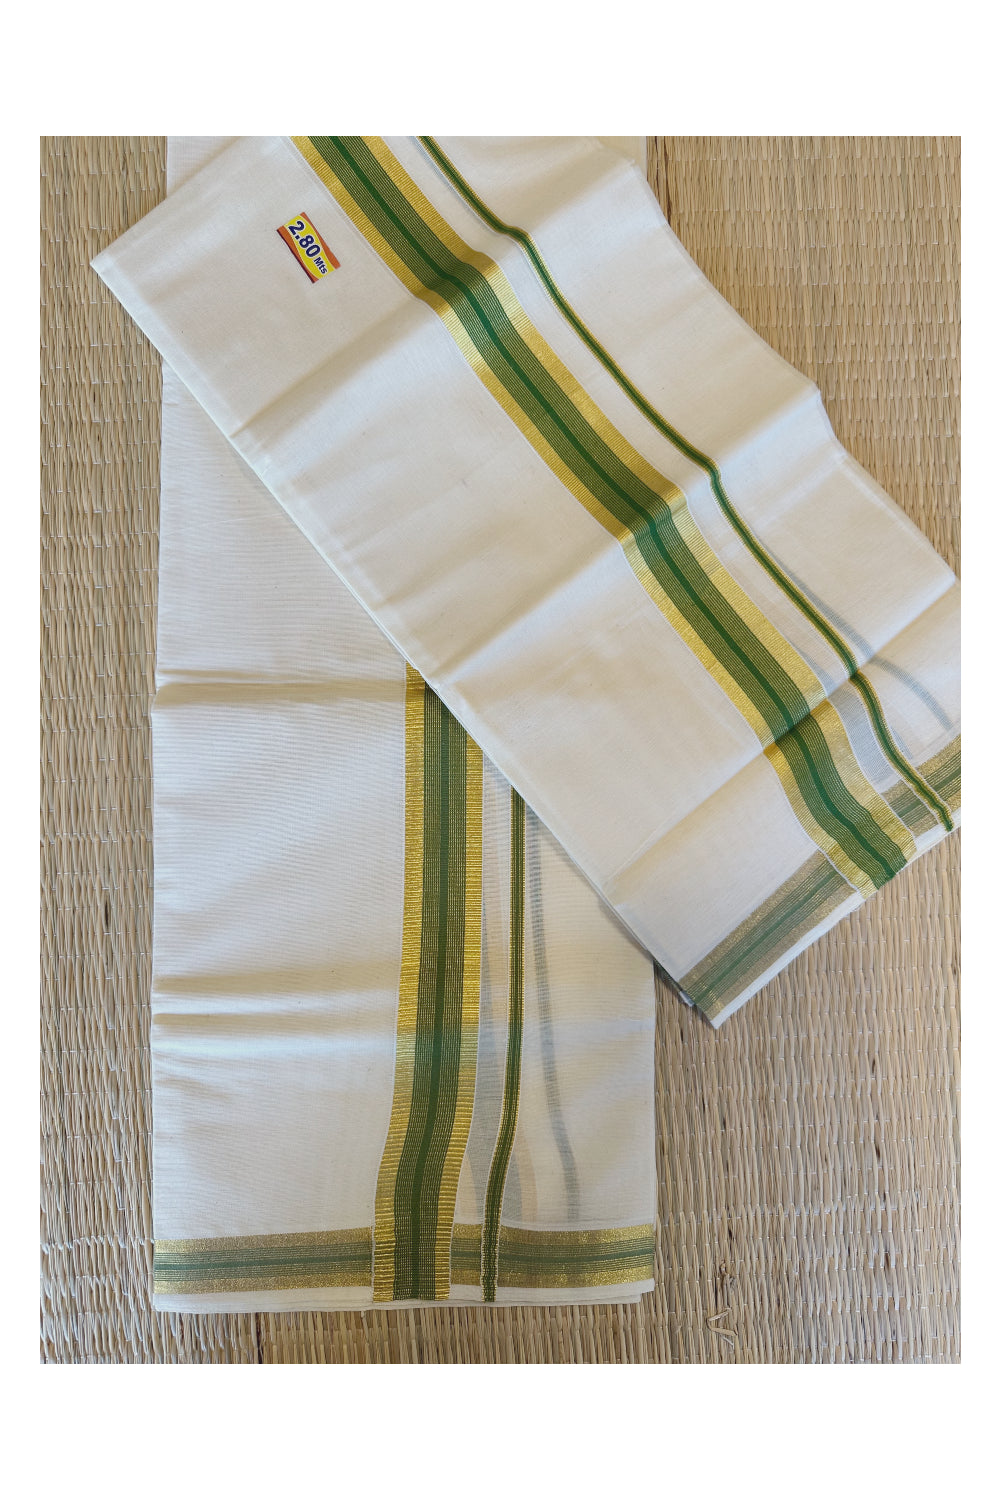 Kerala Cotton Mundum Neriyathum Single (Set Mundu) with Kasavu and Green Border 2.80 Mtrs